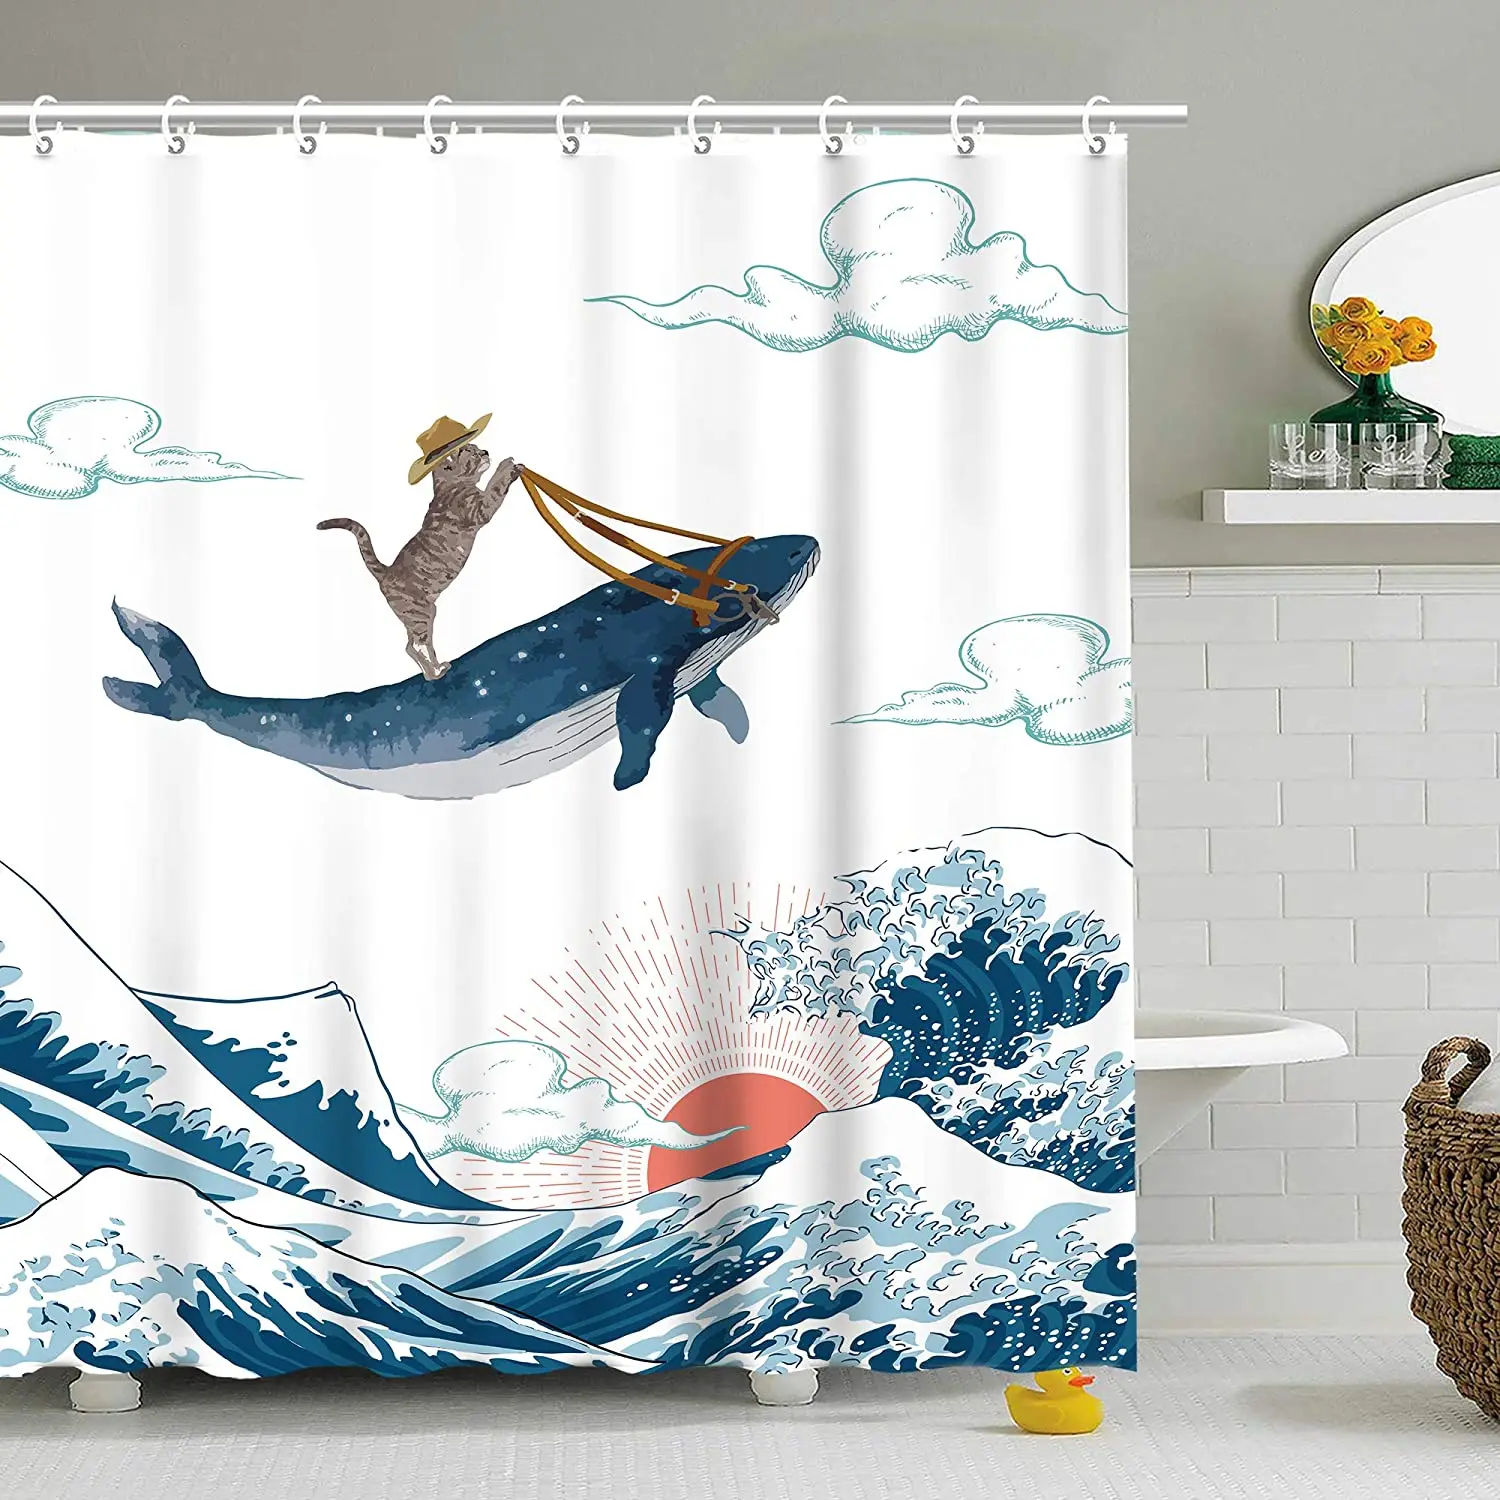 

Japan Waves Shower Curtains Ocean Animal Shark Whale Sea Scenery Creative Bathroom Curtain Bath Screen Home Decor Fabric Cloth